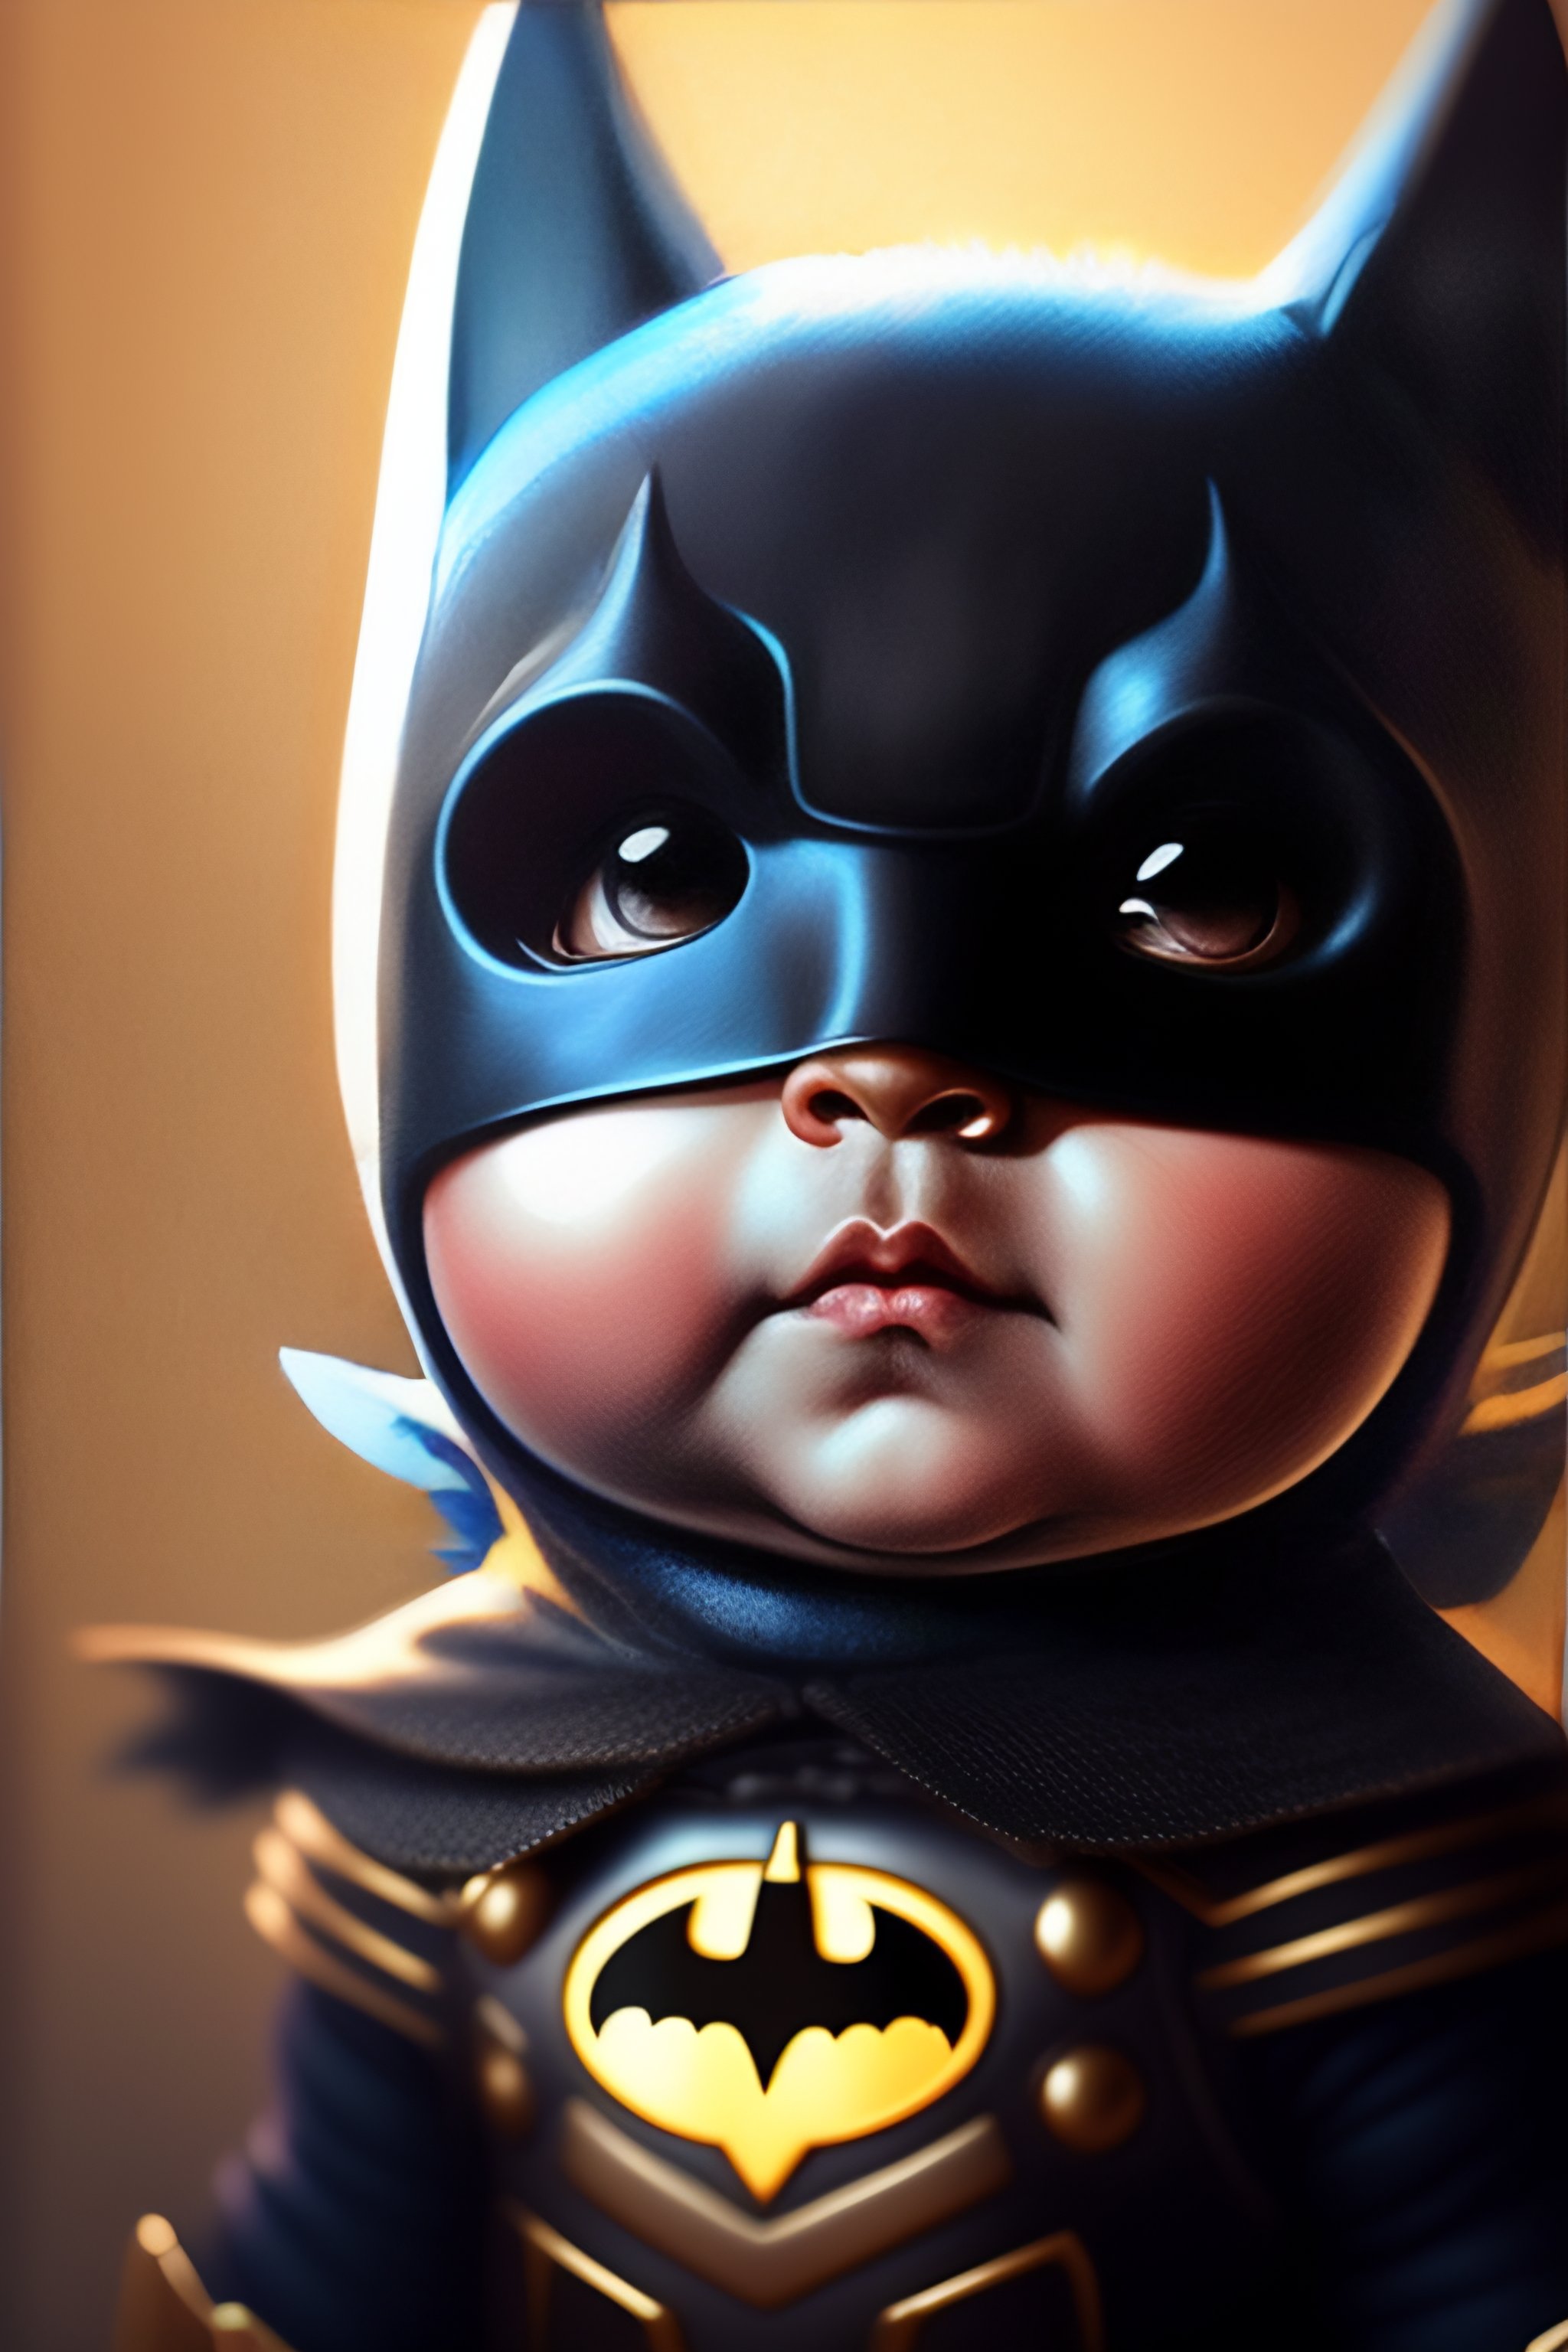 Lexica - Lindo y adorable bebé batman de dibujos animados , fantasía ,  onírico , surrealismo , súper lindo , tendencia en artstation